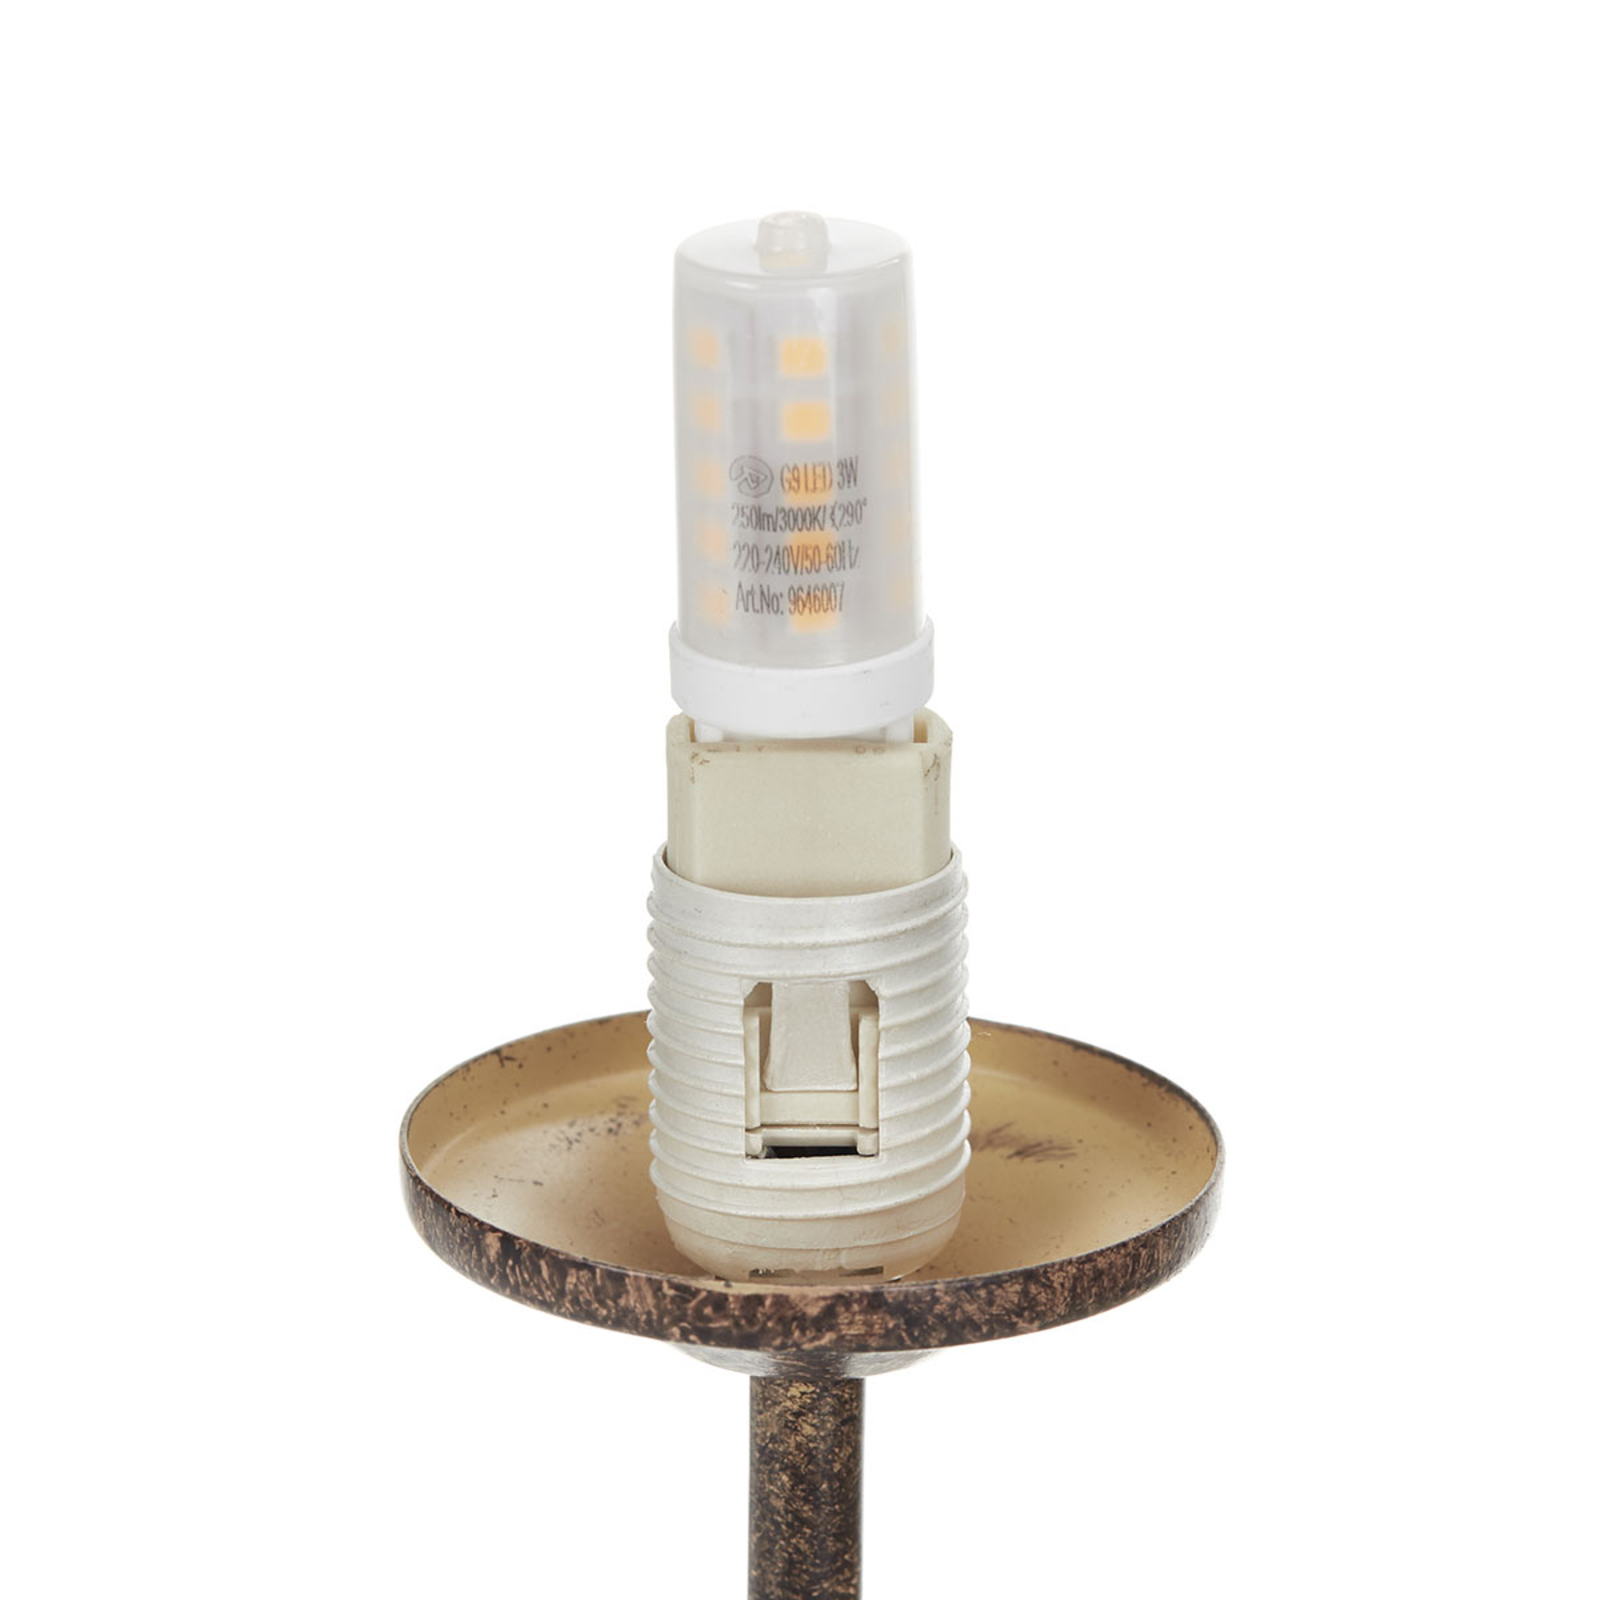 Stolní lampa Greta v rezavém designu, dvouramenná